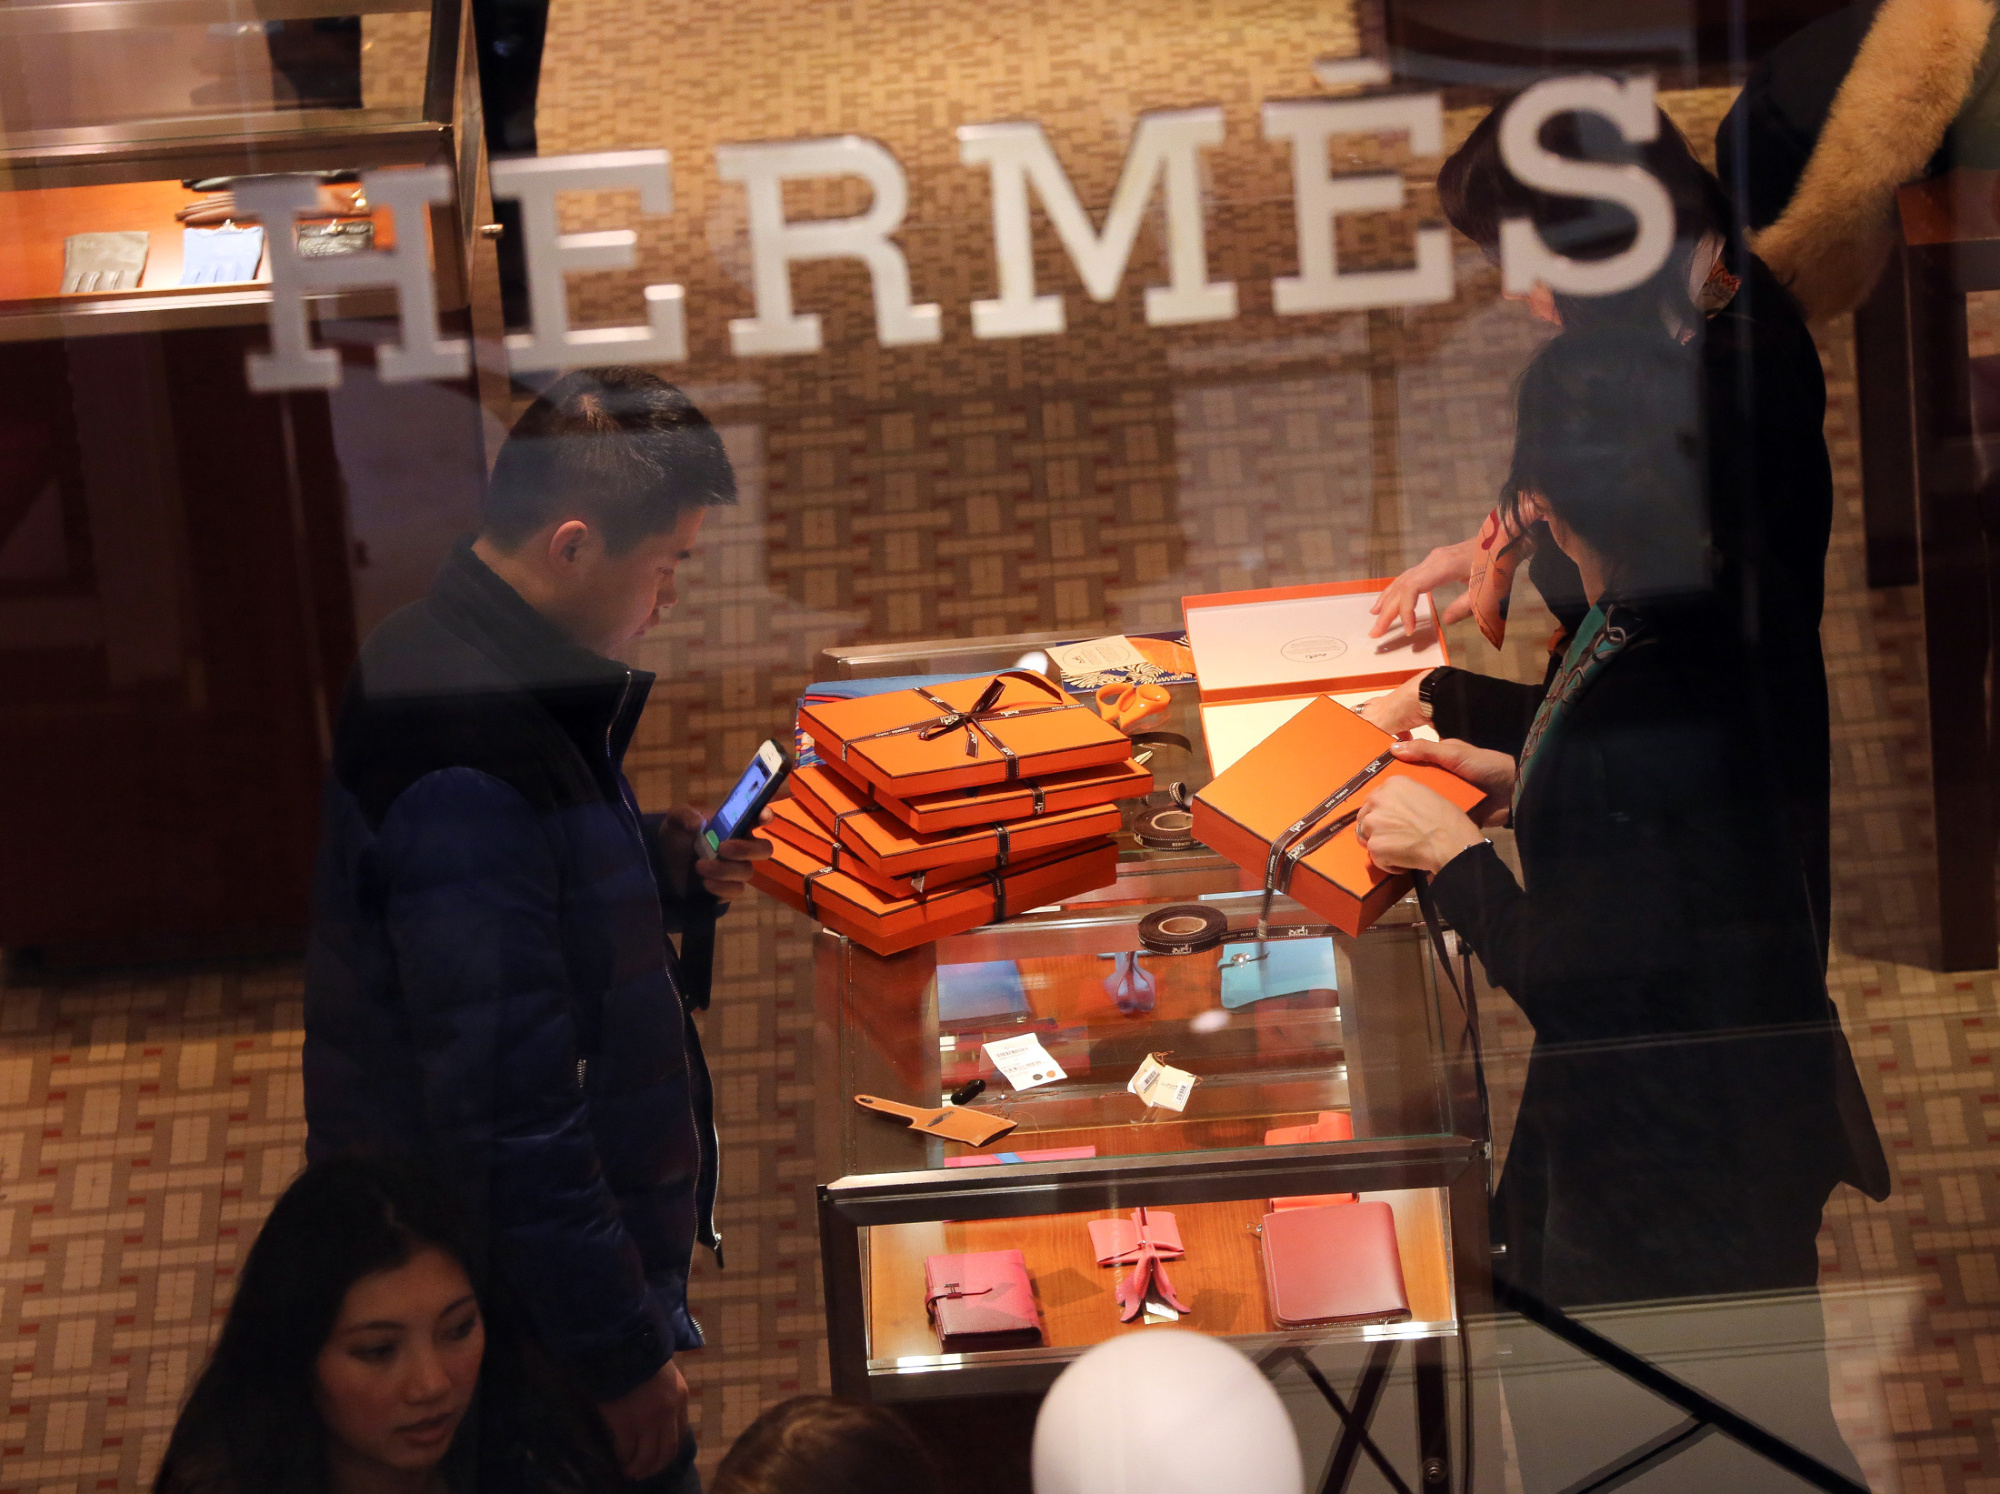 hermes sales